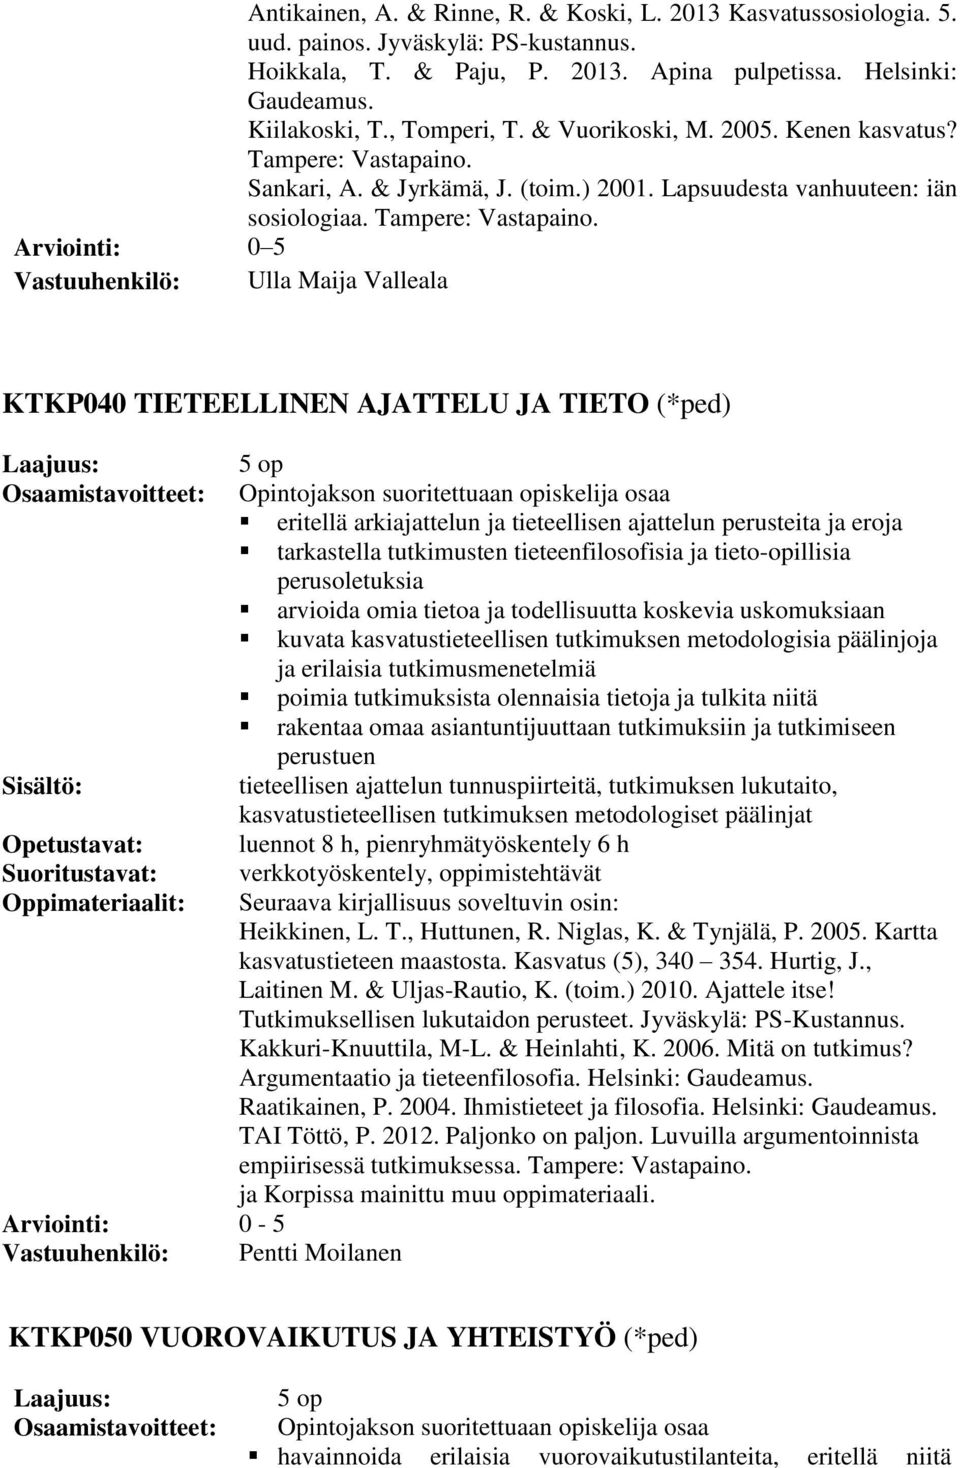 Sankari, A. & Jyrkämä, J. (toim.) 2001. Lapsuudesta vanhuuteen: iän sosiologiaa. Tampere: Vastapaino.